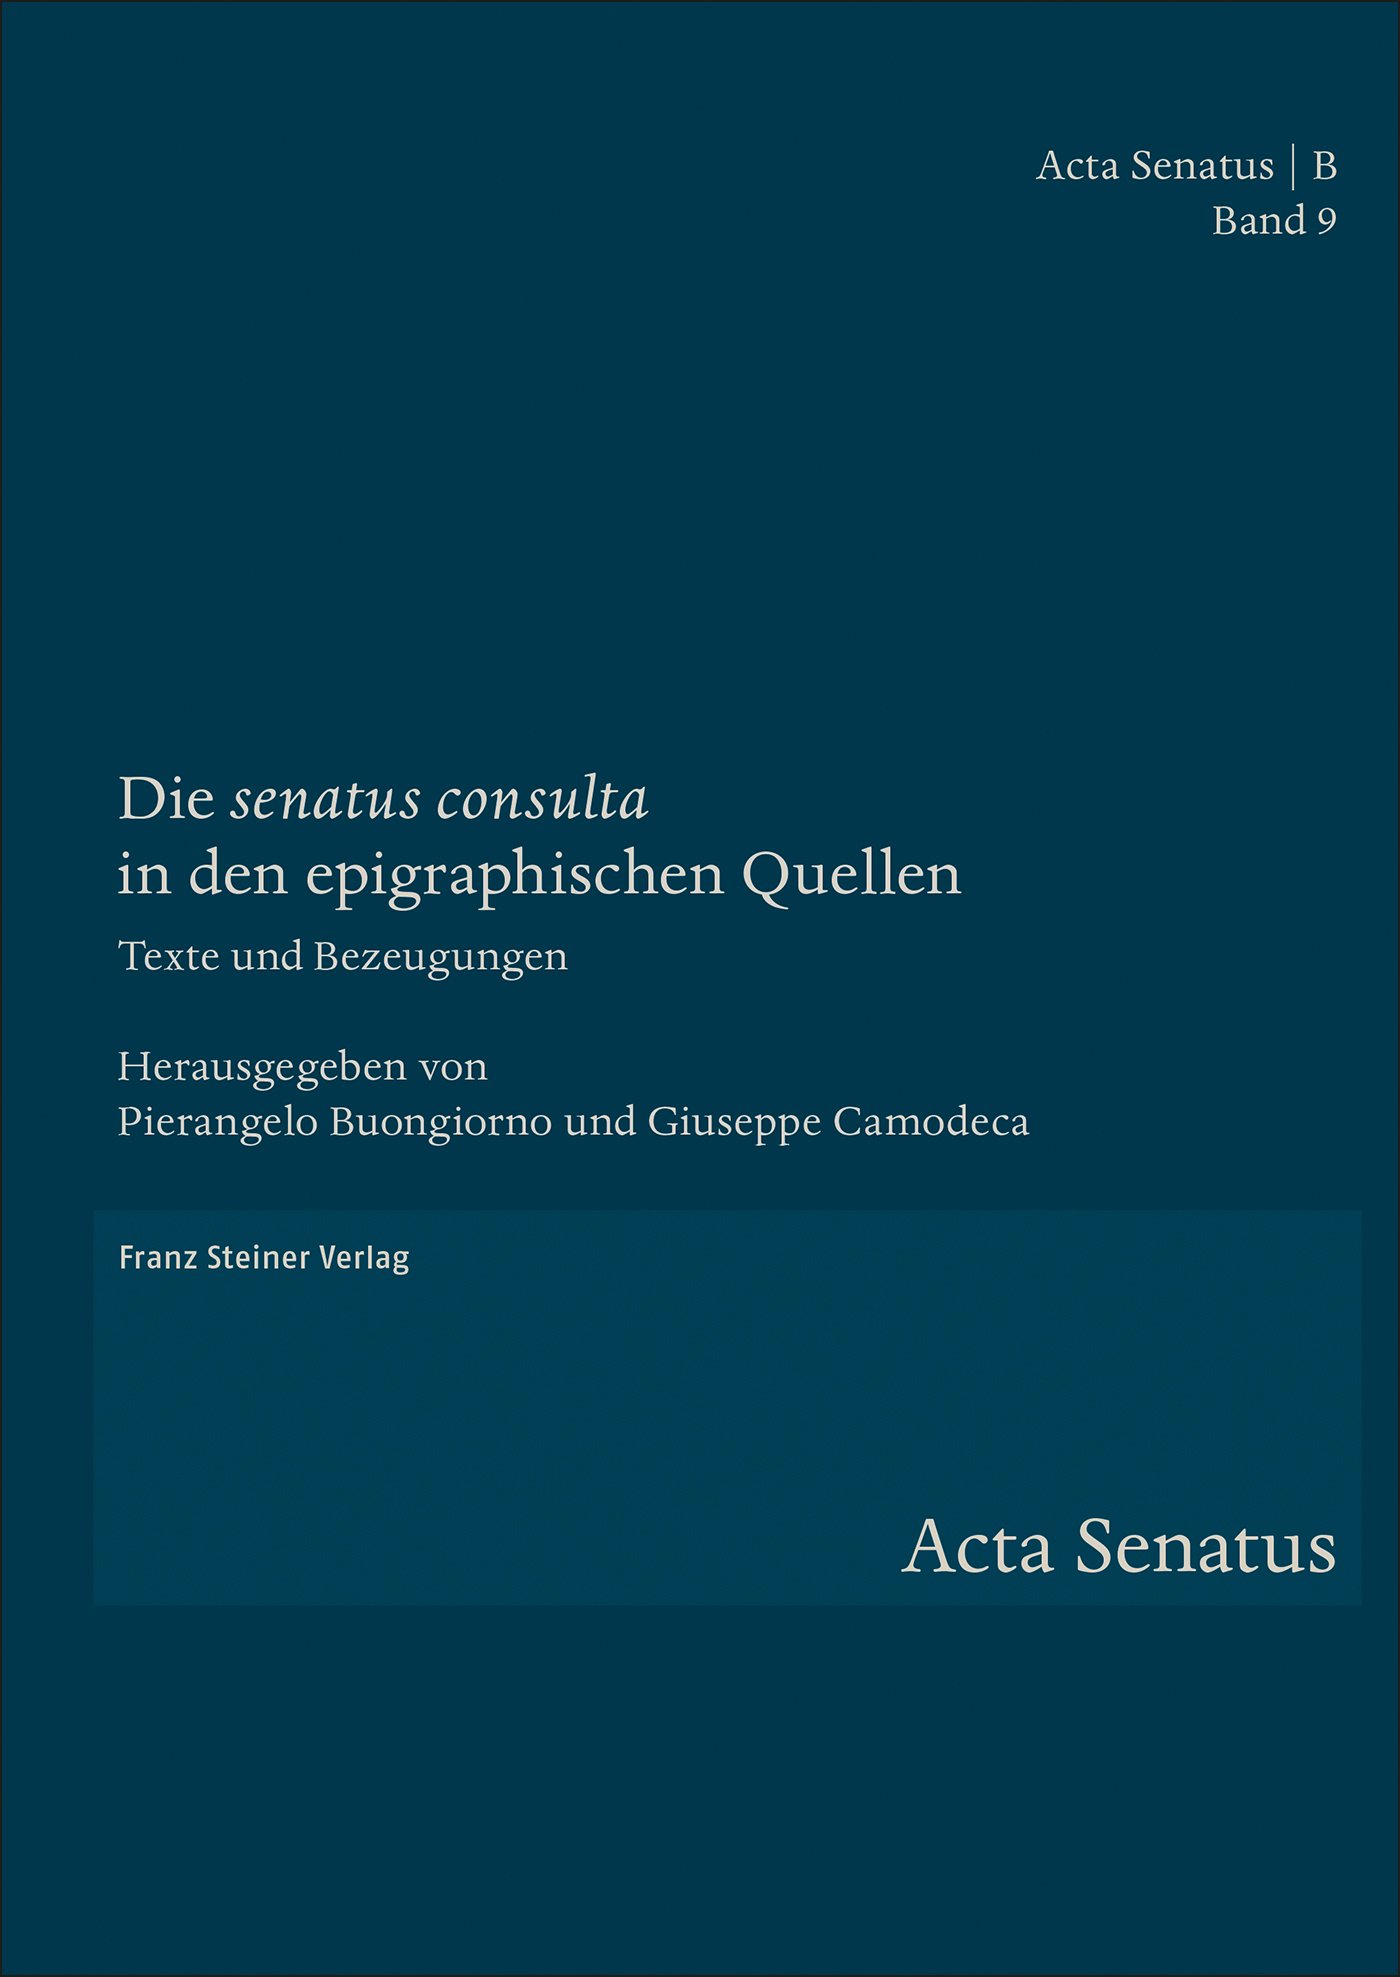 Die "senatus consulta" in den epigraphischen Quellen